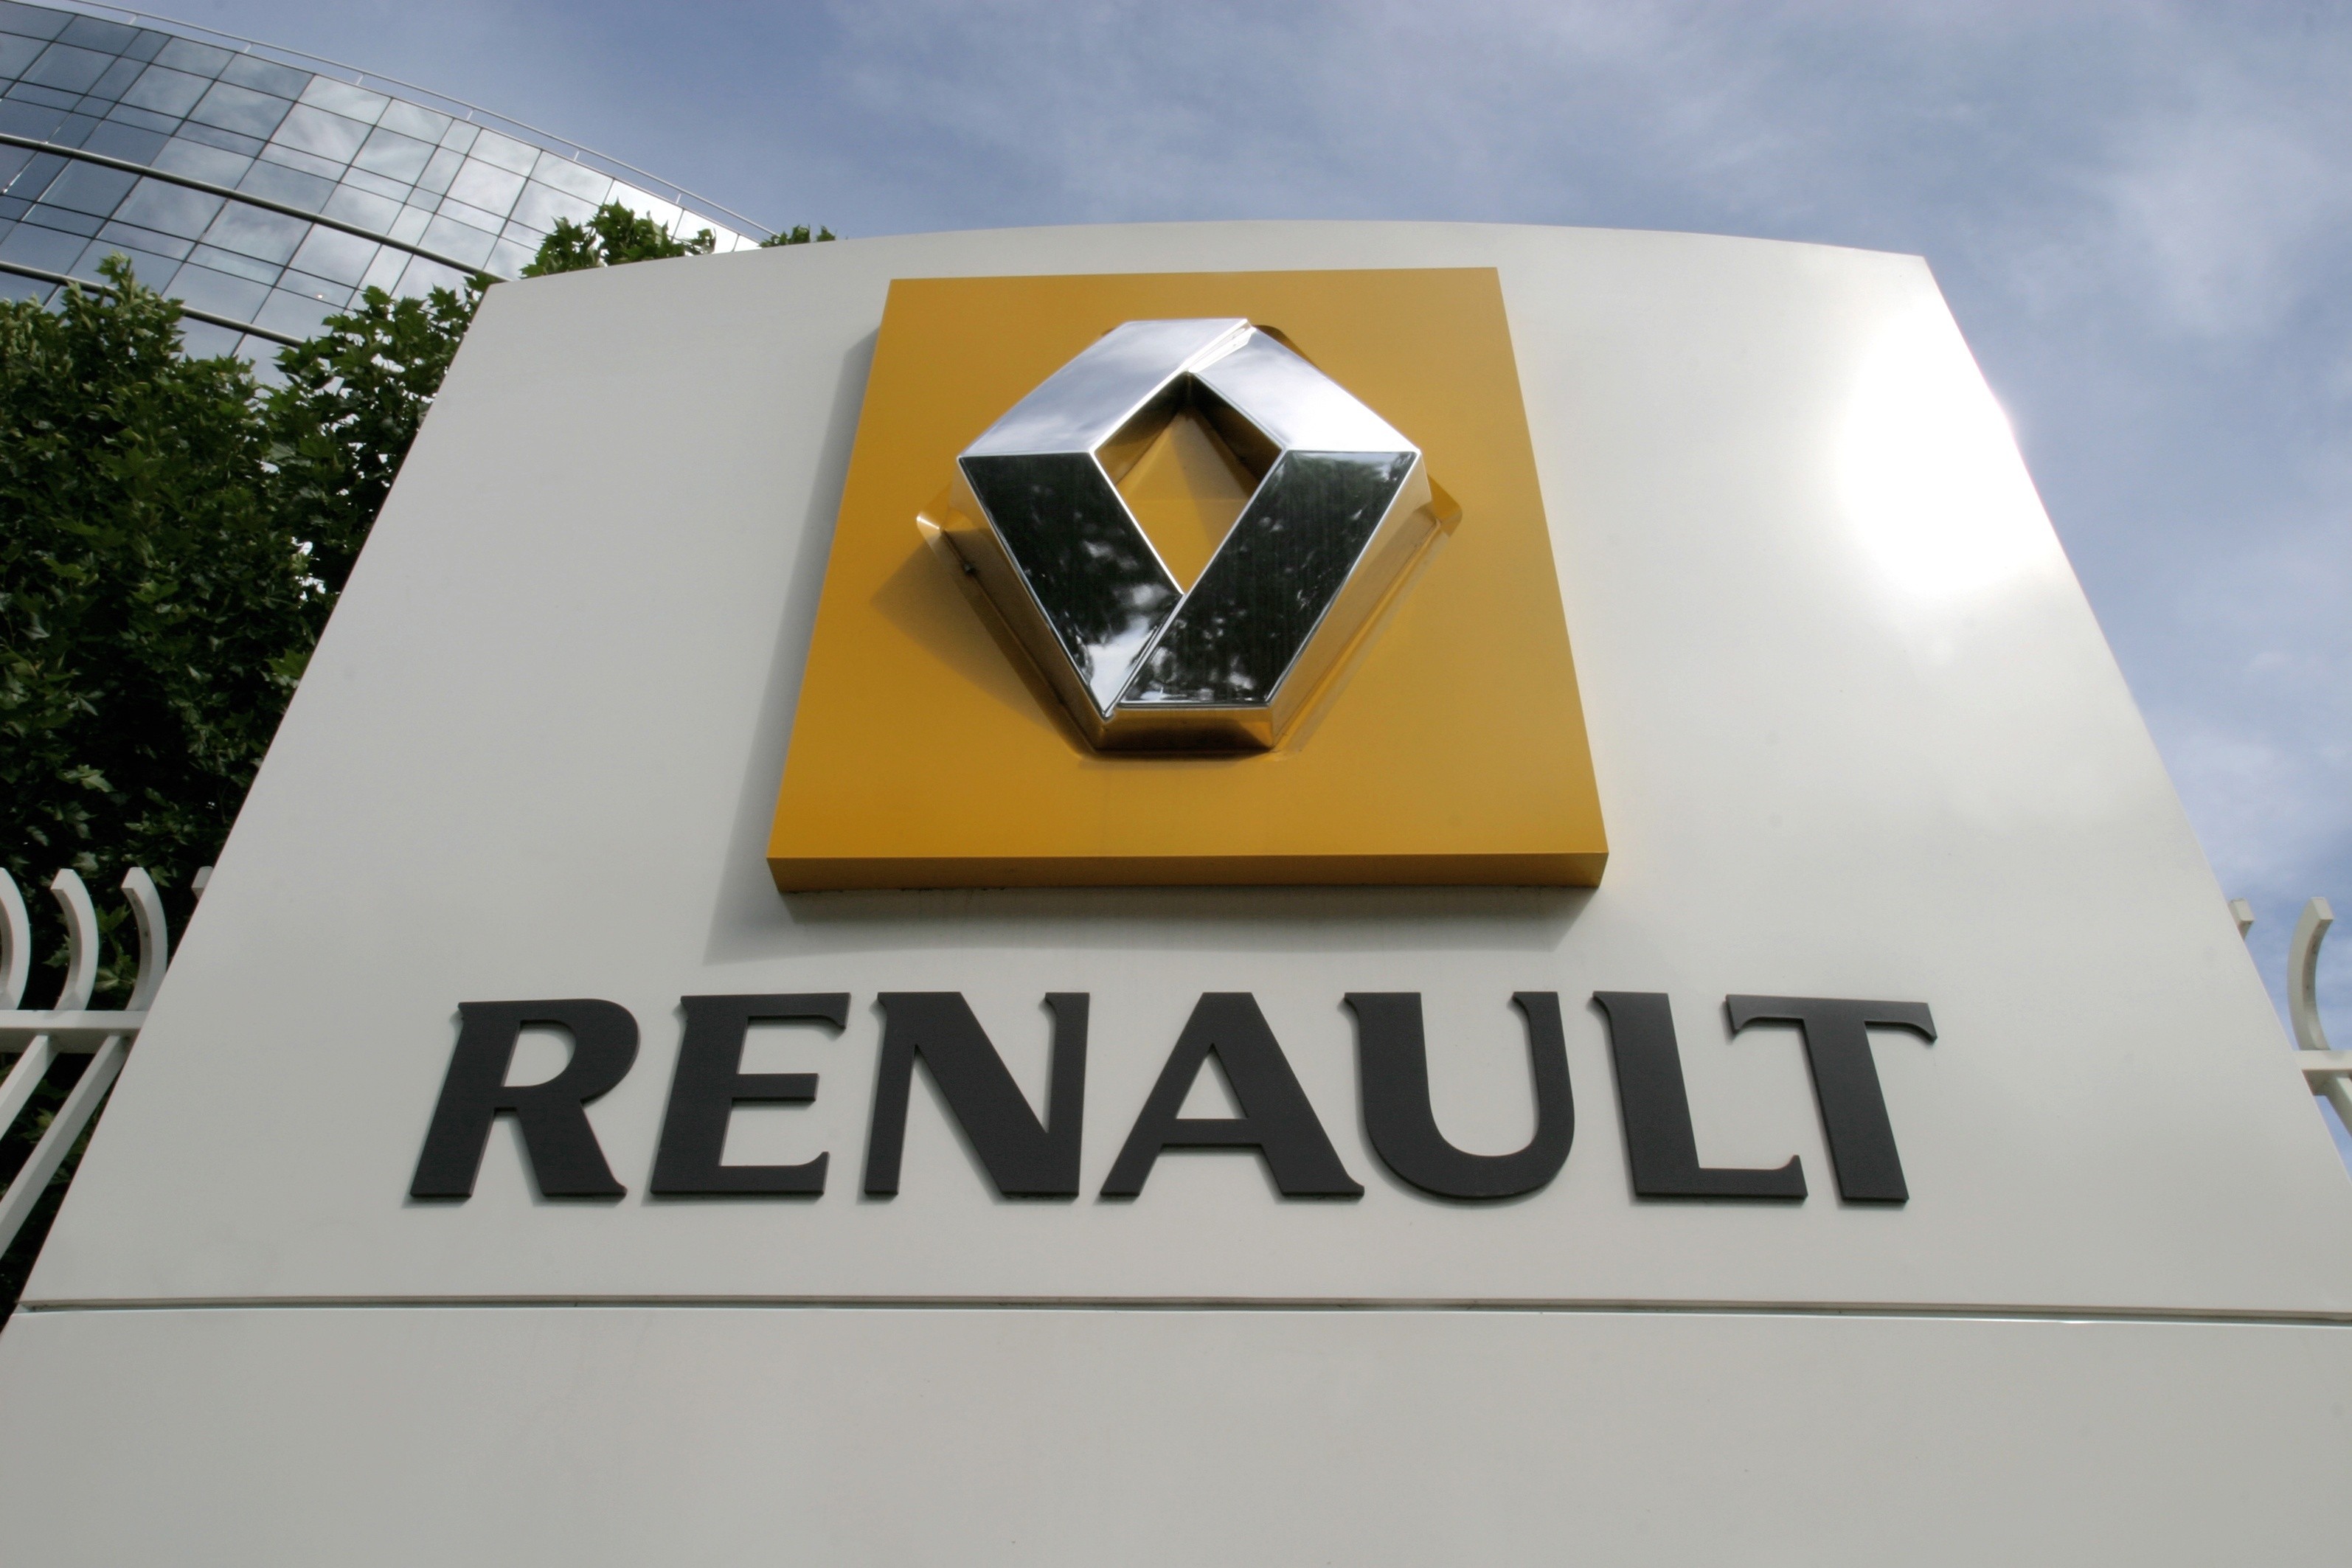 Trei vesti proaste pentru Renault, compania mama a Dacia: Ratingul scade la junk, cererea se prabuseste, compania suspenda investitii